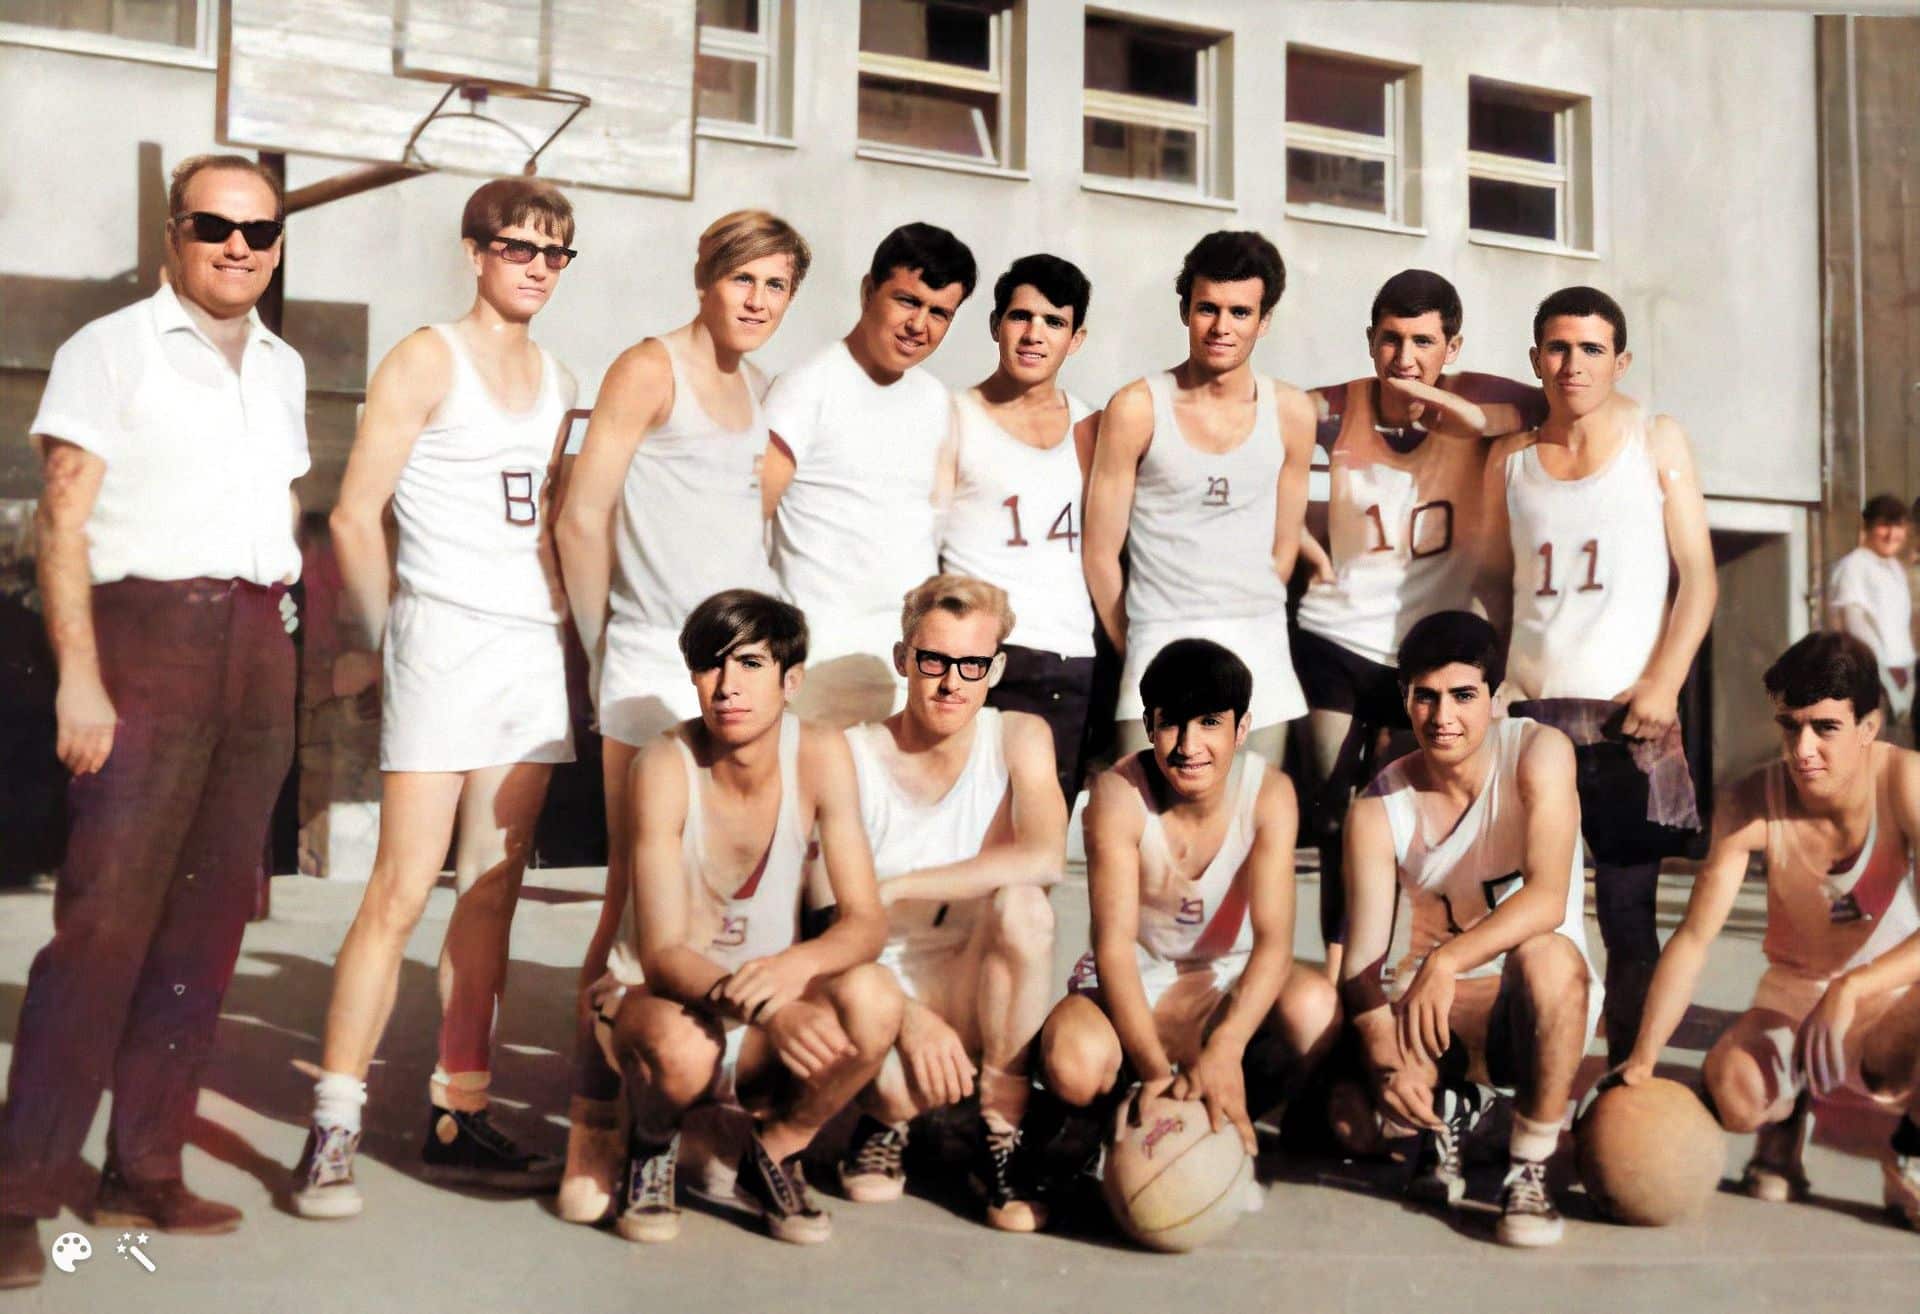 Rois Vater Rami Mandel und das historische Basketballspiel von 1967 (koloriert und verbessert mit MyHeritage)